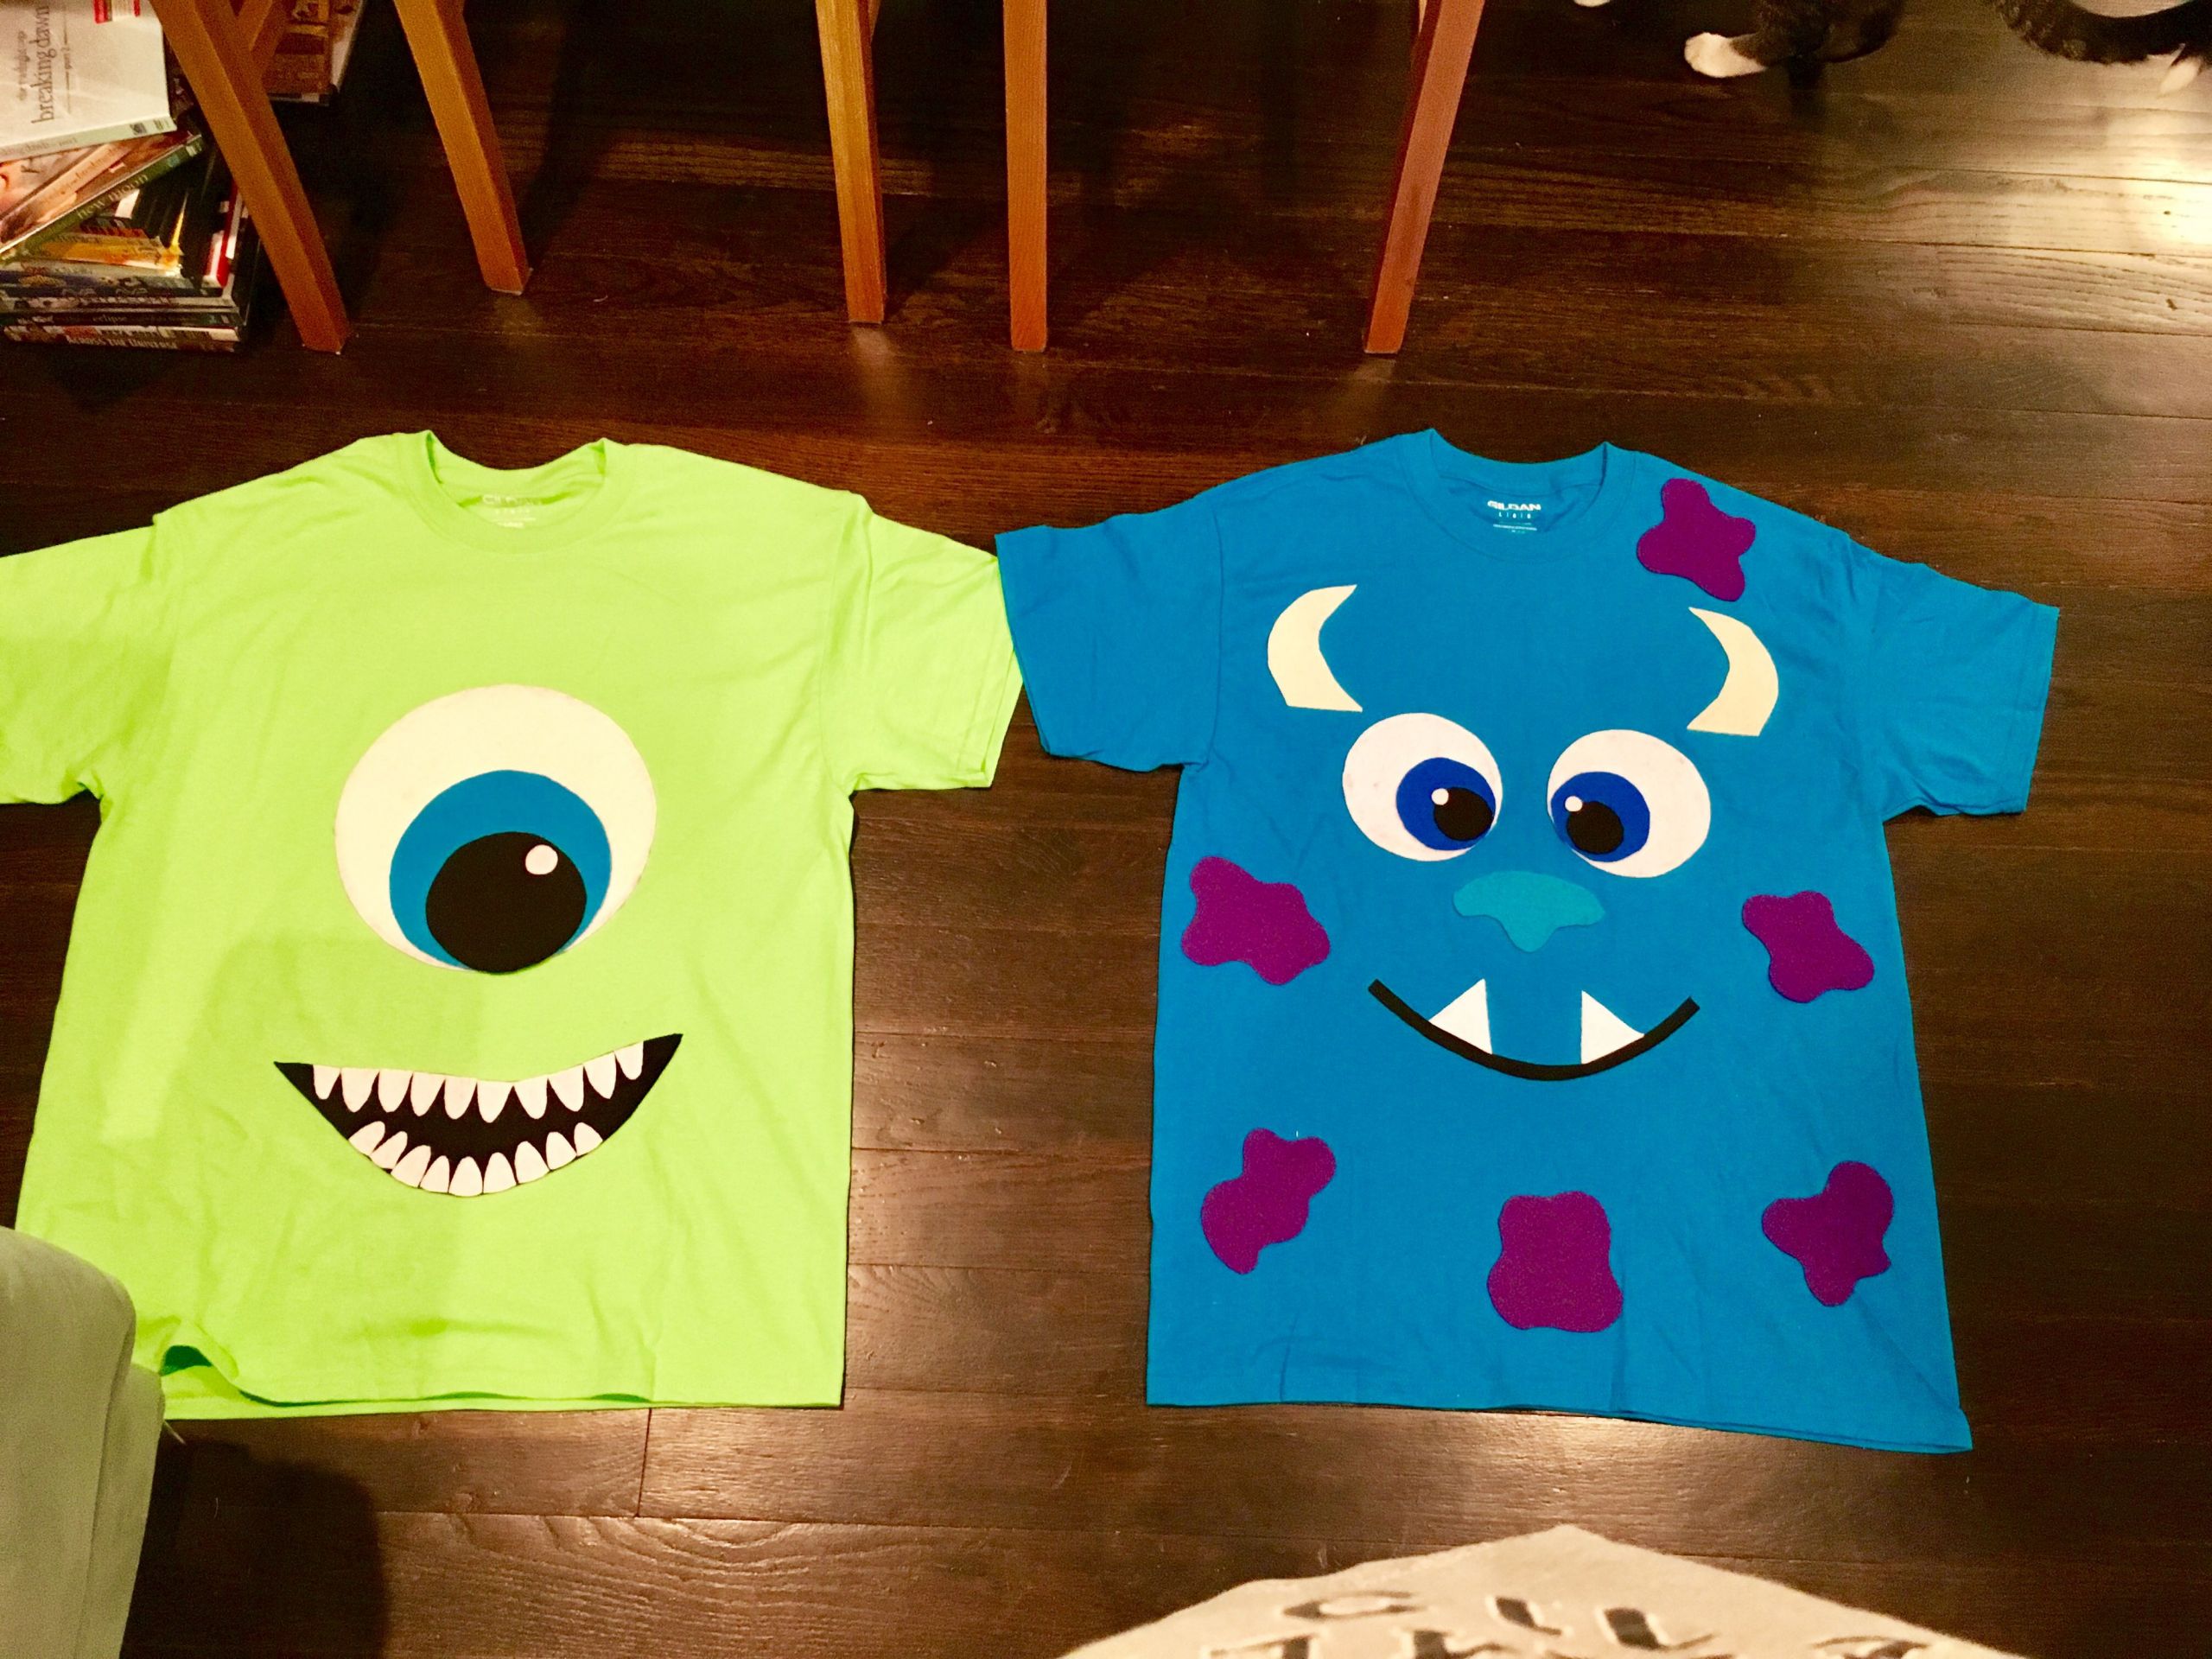 DIY Monsters Inc Costume
 DIY Monsters Inc costume